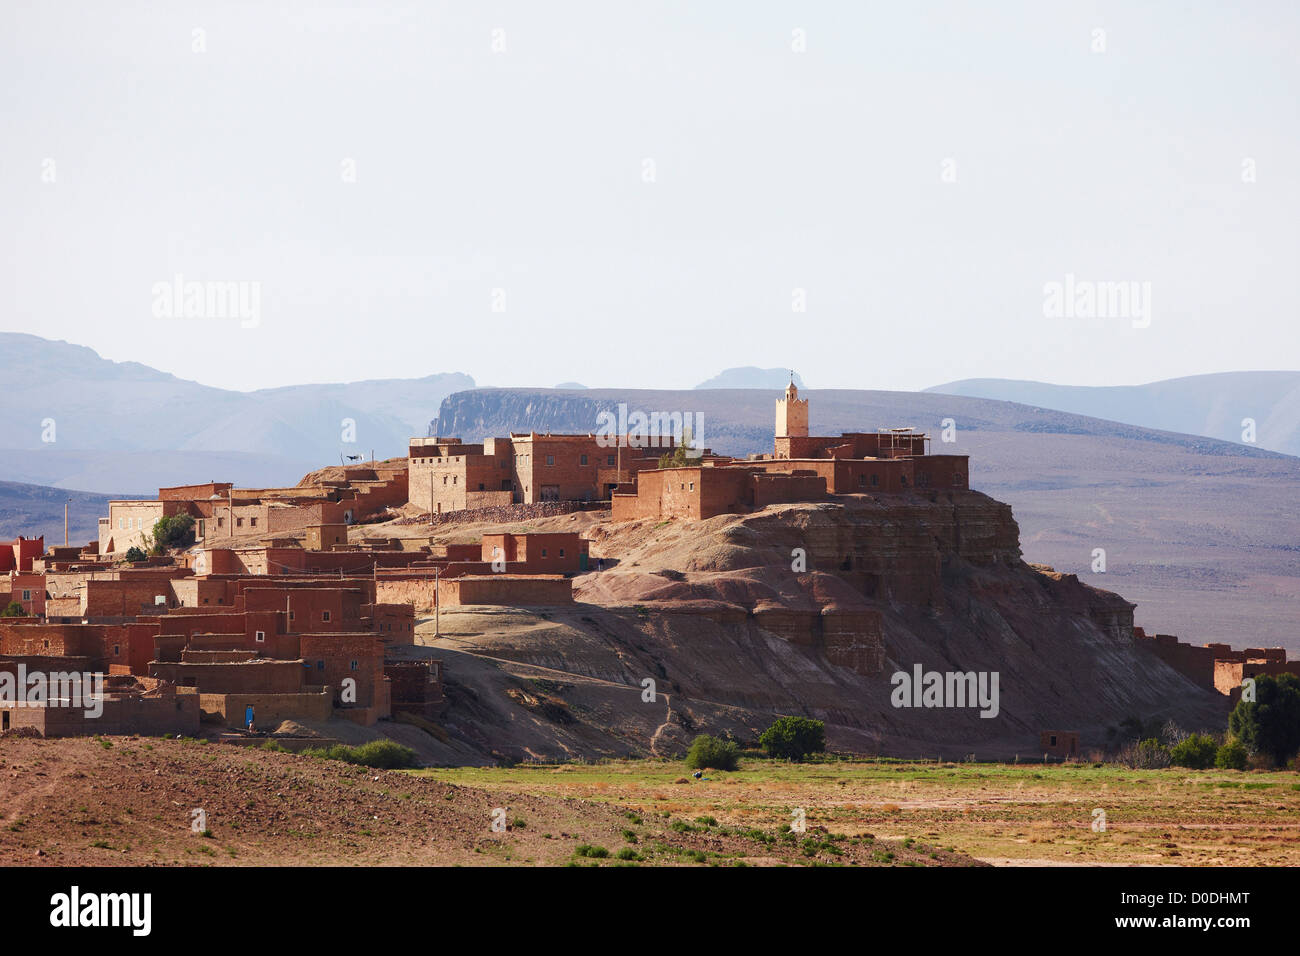 Moschee auf Hügel und irdenen Strukturen, Marokko Stockfoto